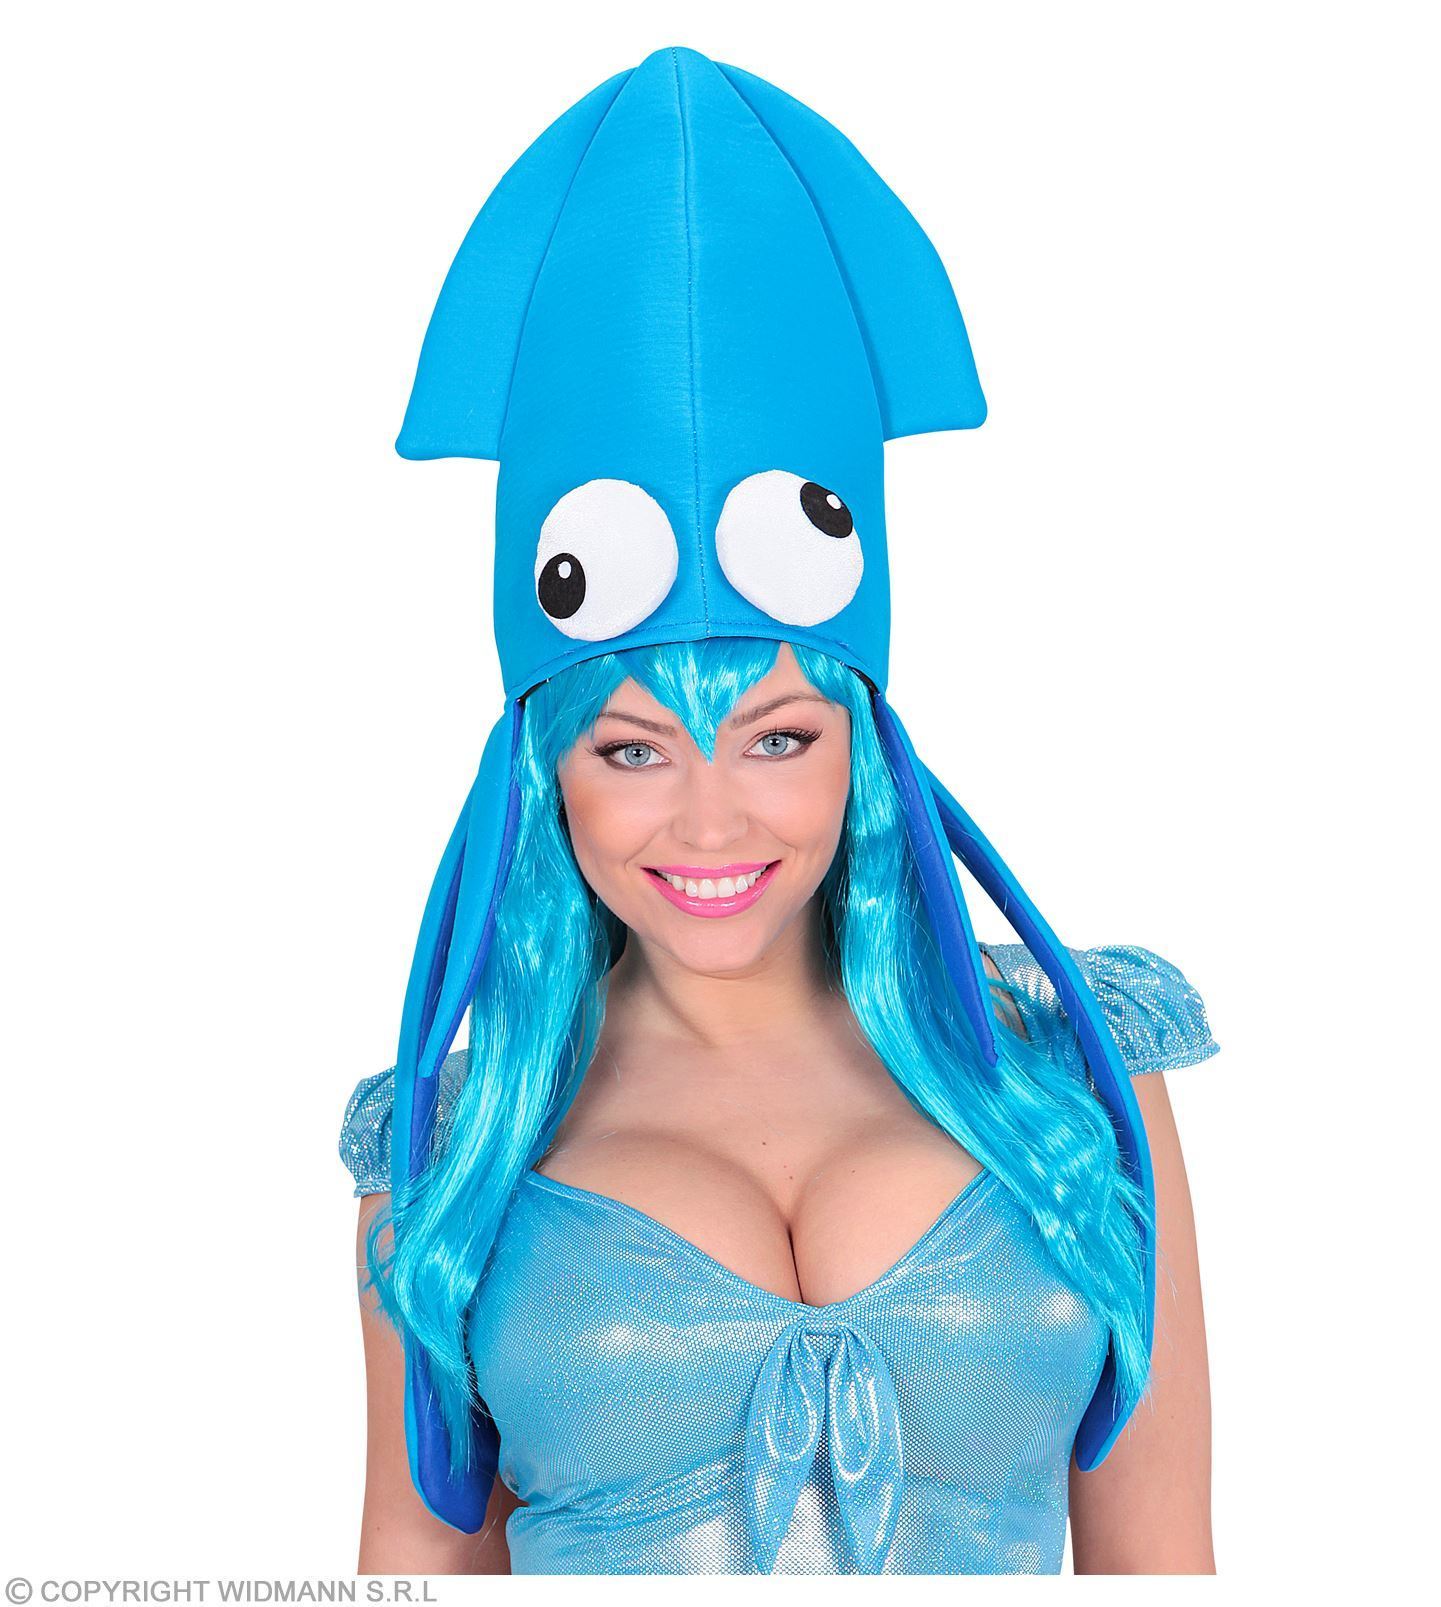 inktvis hoed, blauw. Blauw inktvis hoeden met lange tentakels